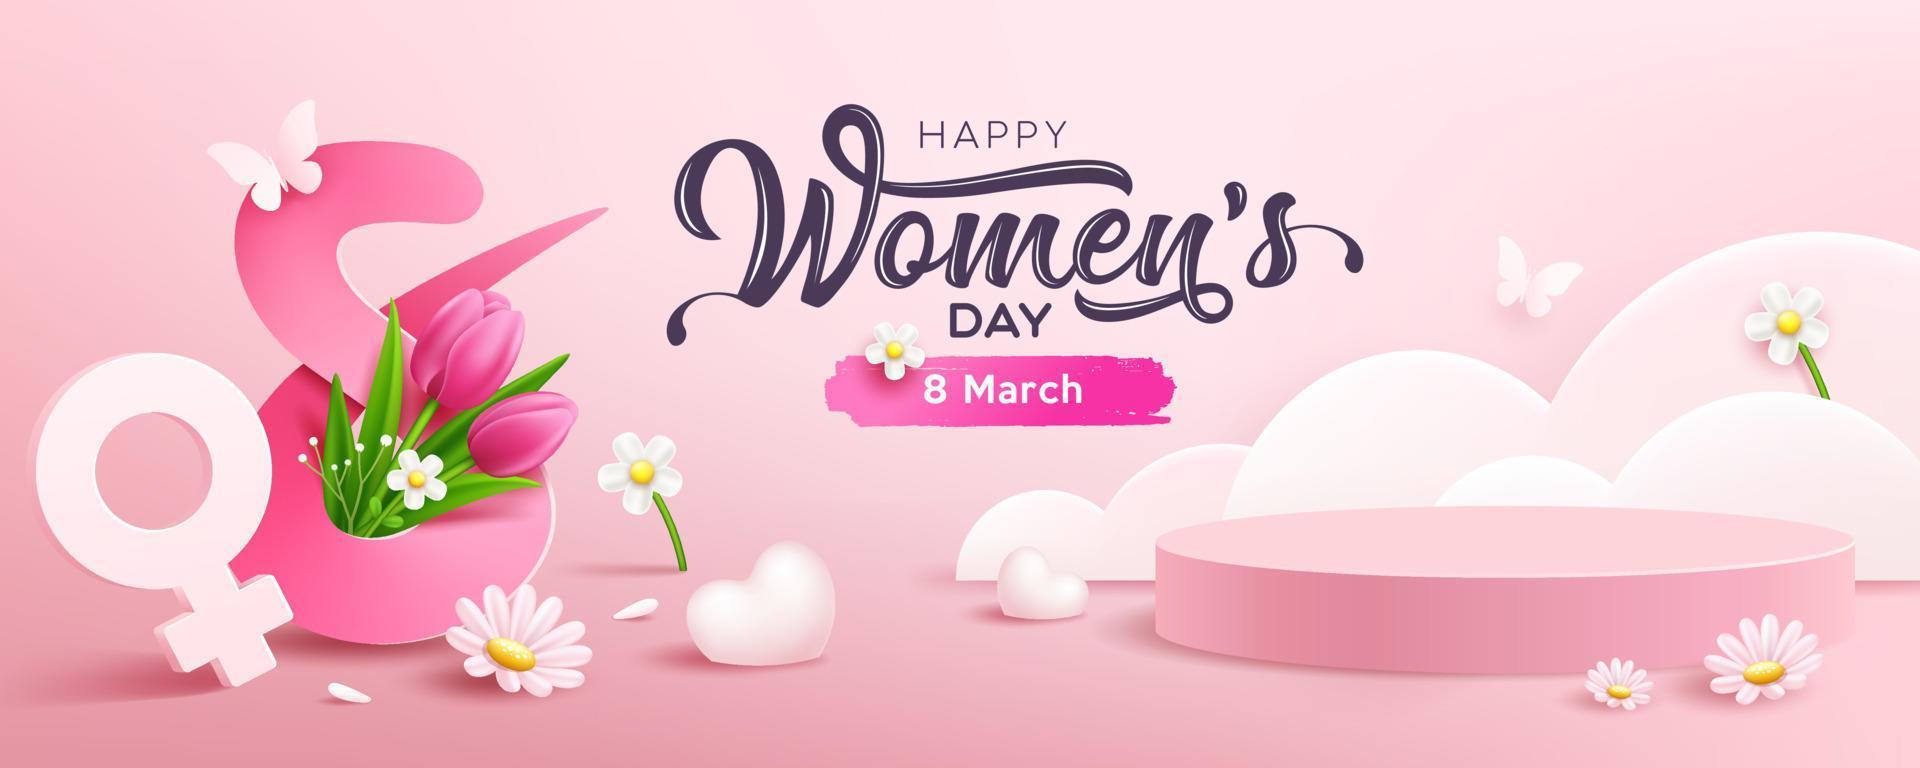 vrouwen dag 8 maart, presentatie podium en hart, wit bloemen, vlinder, concept ontwerp banier, roze achtergrond, eps10 vector illustratie.